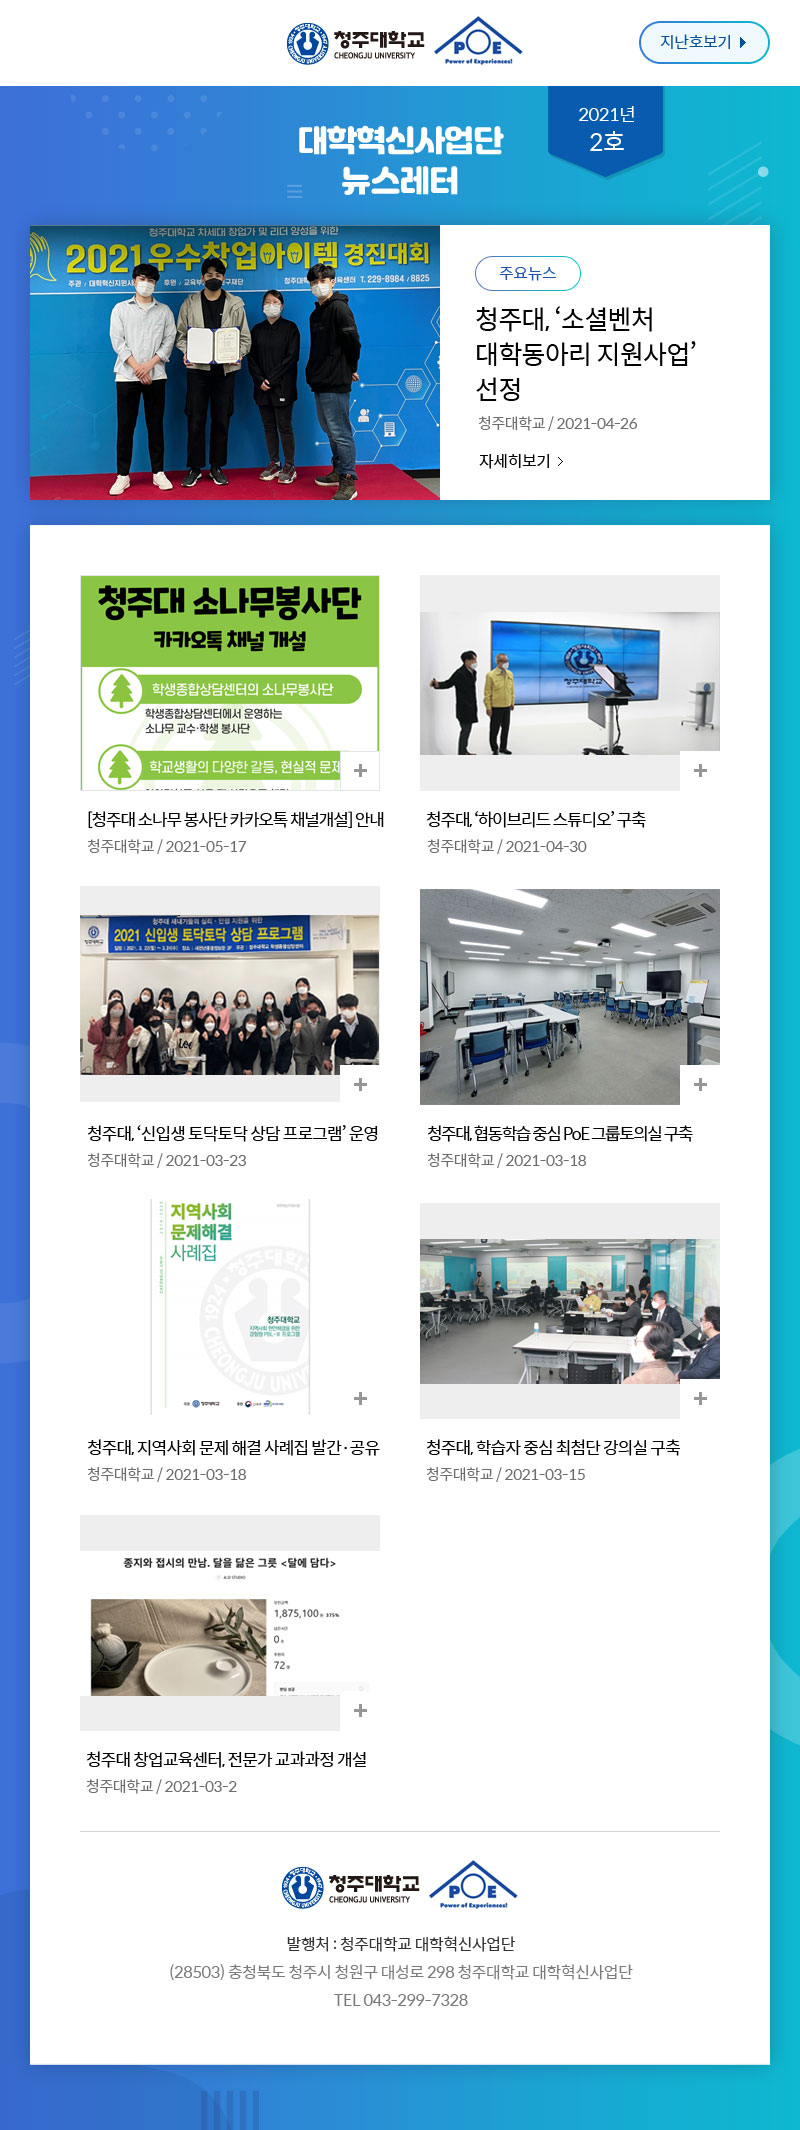 대학혁신사업단 뉴스레터 2021년 1호 뉴스레터